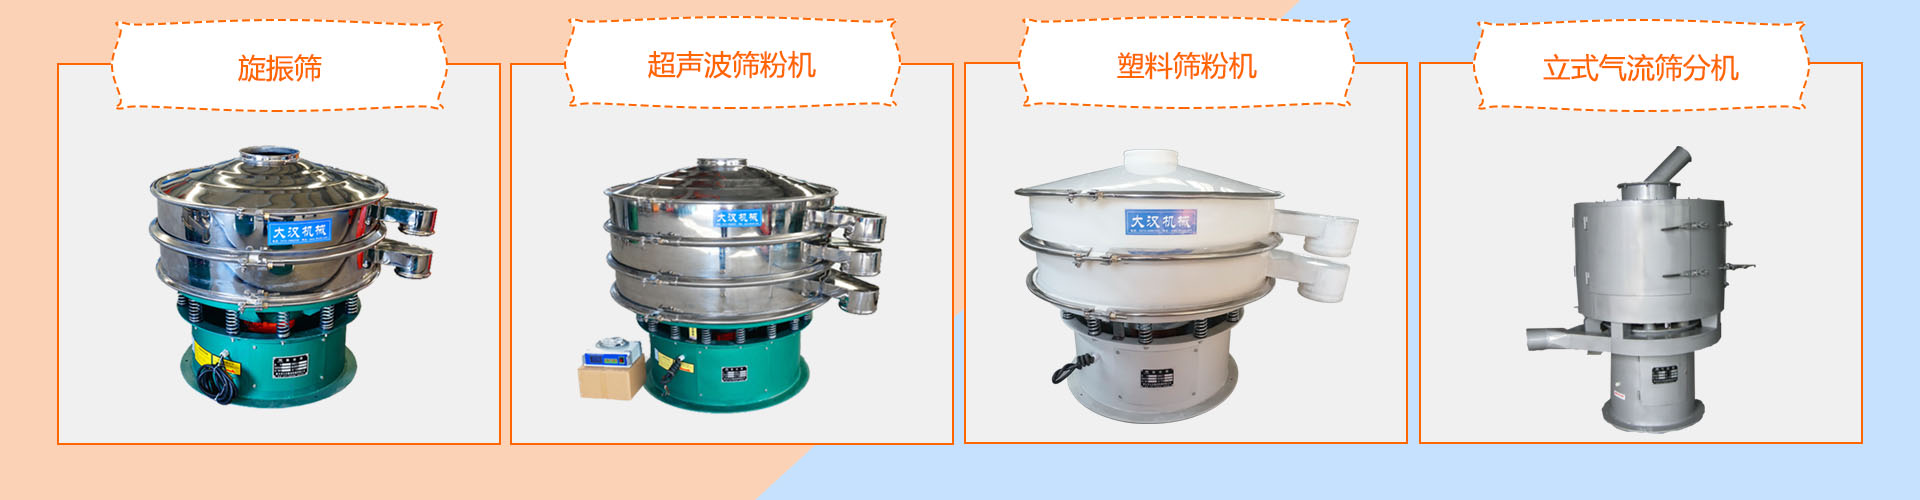 旋(xuan)振(zhen)篩,超聲波篩粉機,塑料篩粉機,立式篩分機產品展示